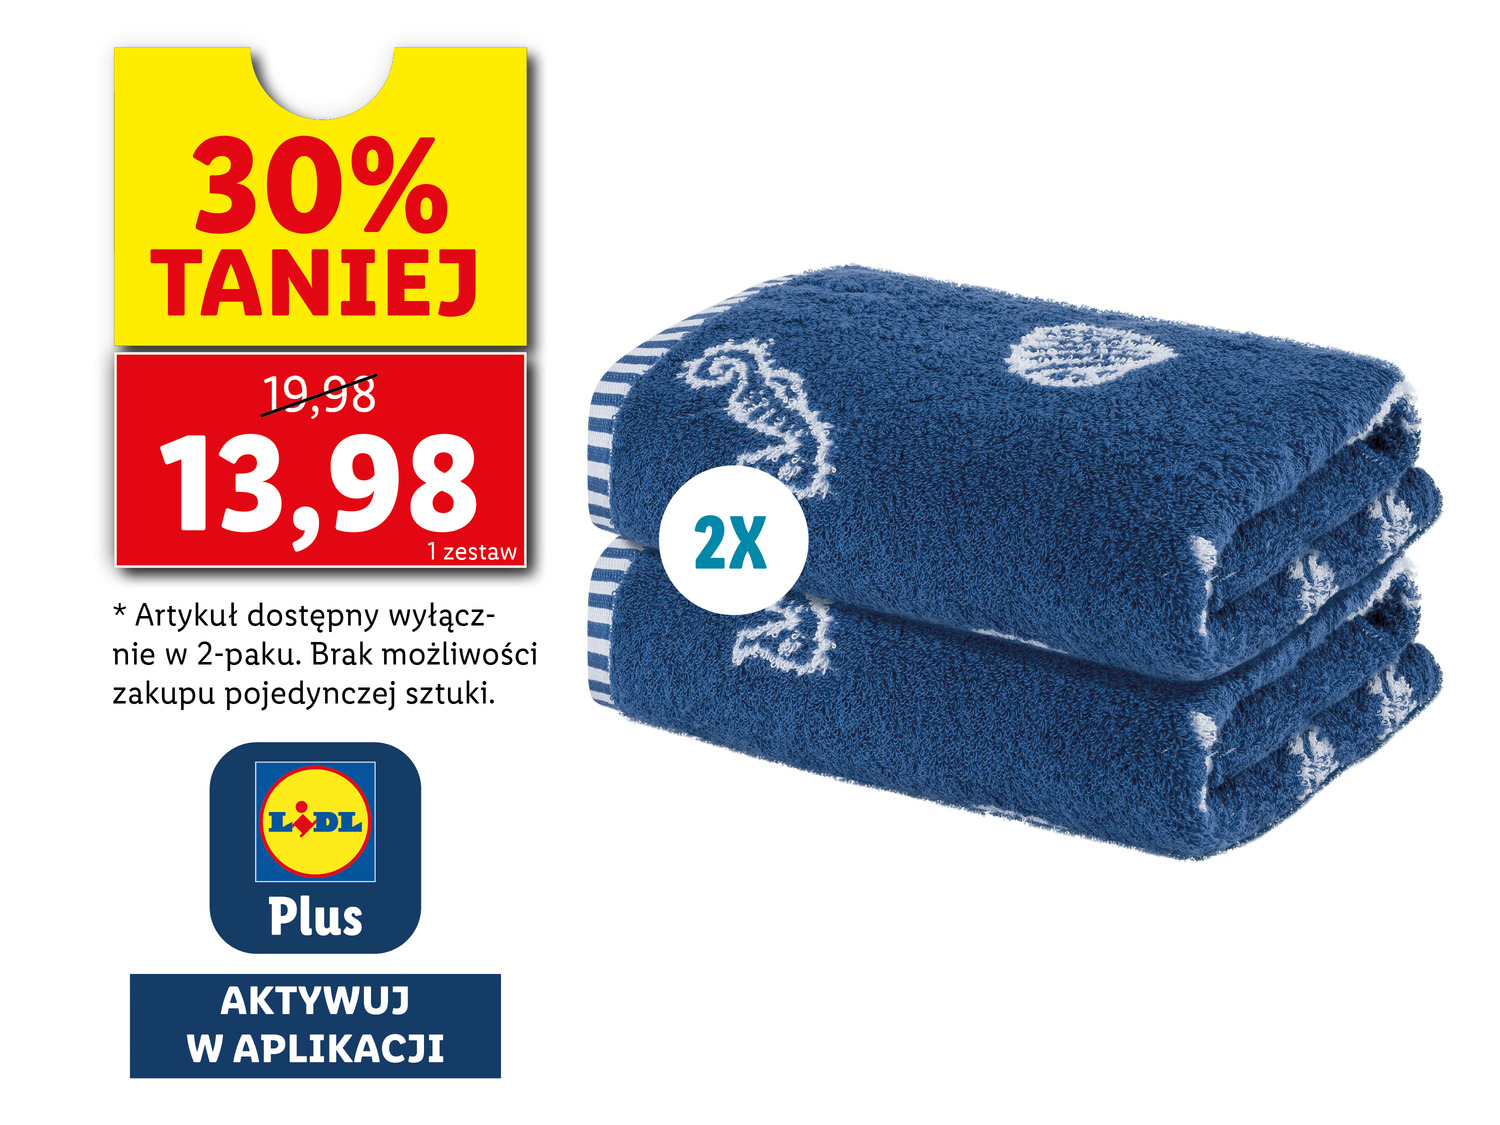 Ręczniki frotté 50 x 100 cm, 2 szt.* , cena 19,98 PLN 
- miękkie i puszyste
- ...